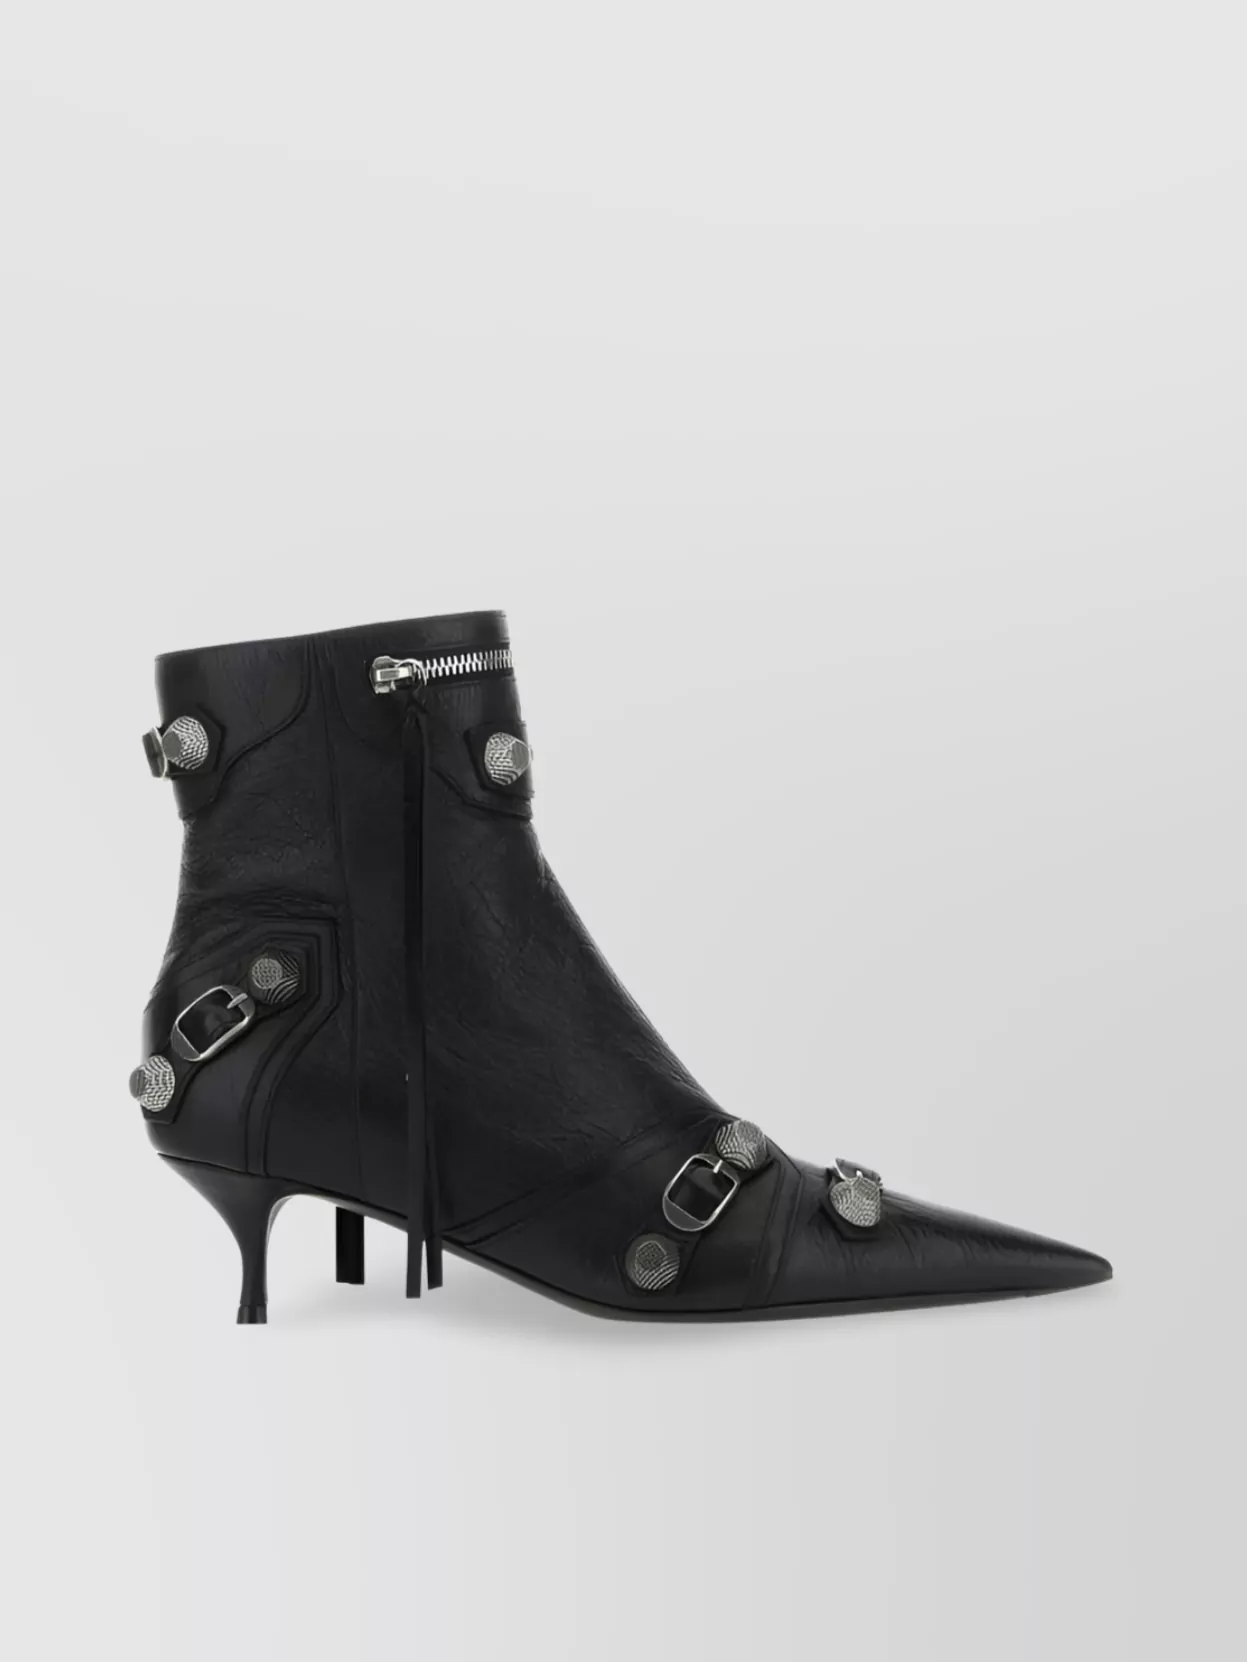 Shop Balenciaga Pointed Toe Stiletto Boots